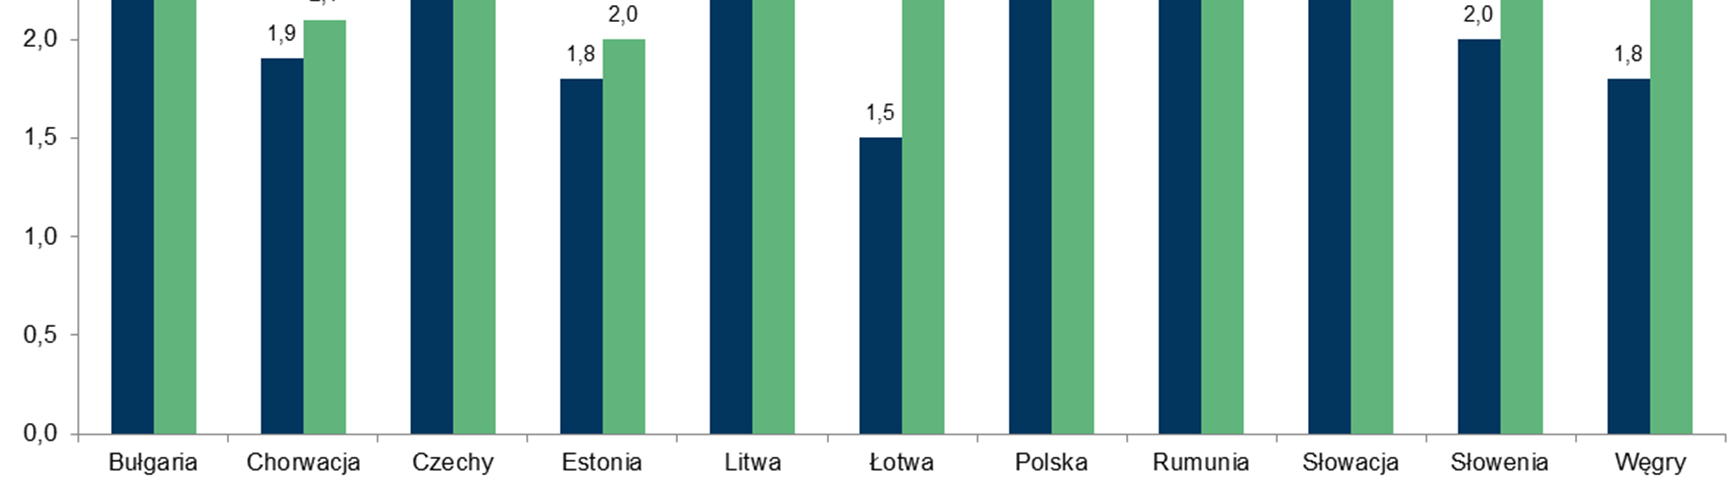 Europa Środkowo-Wschodnia: Prognozy wzrostu